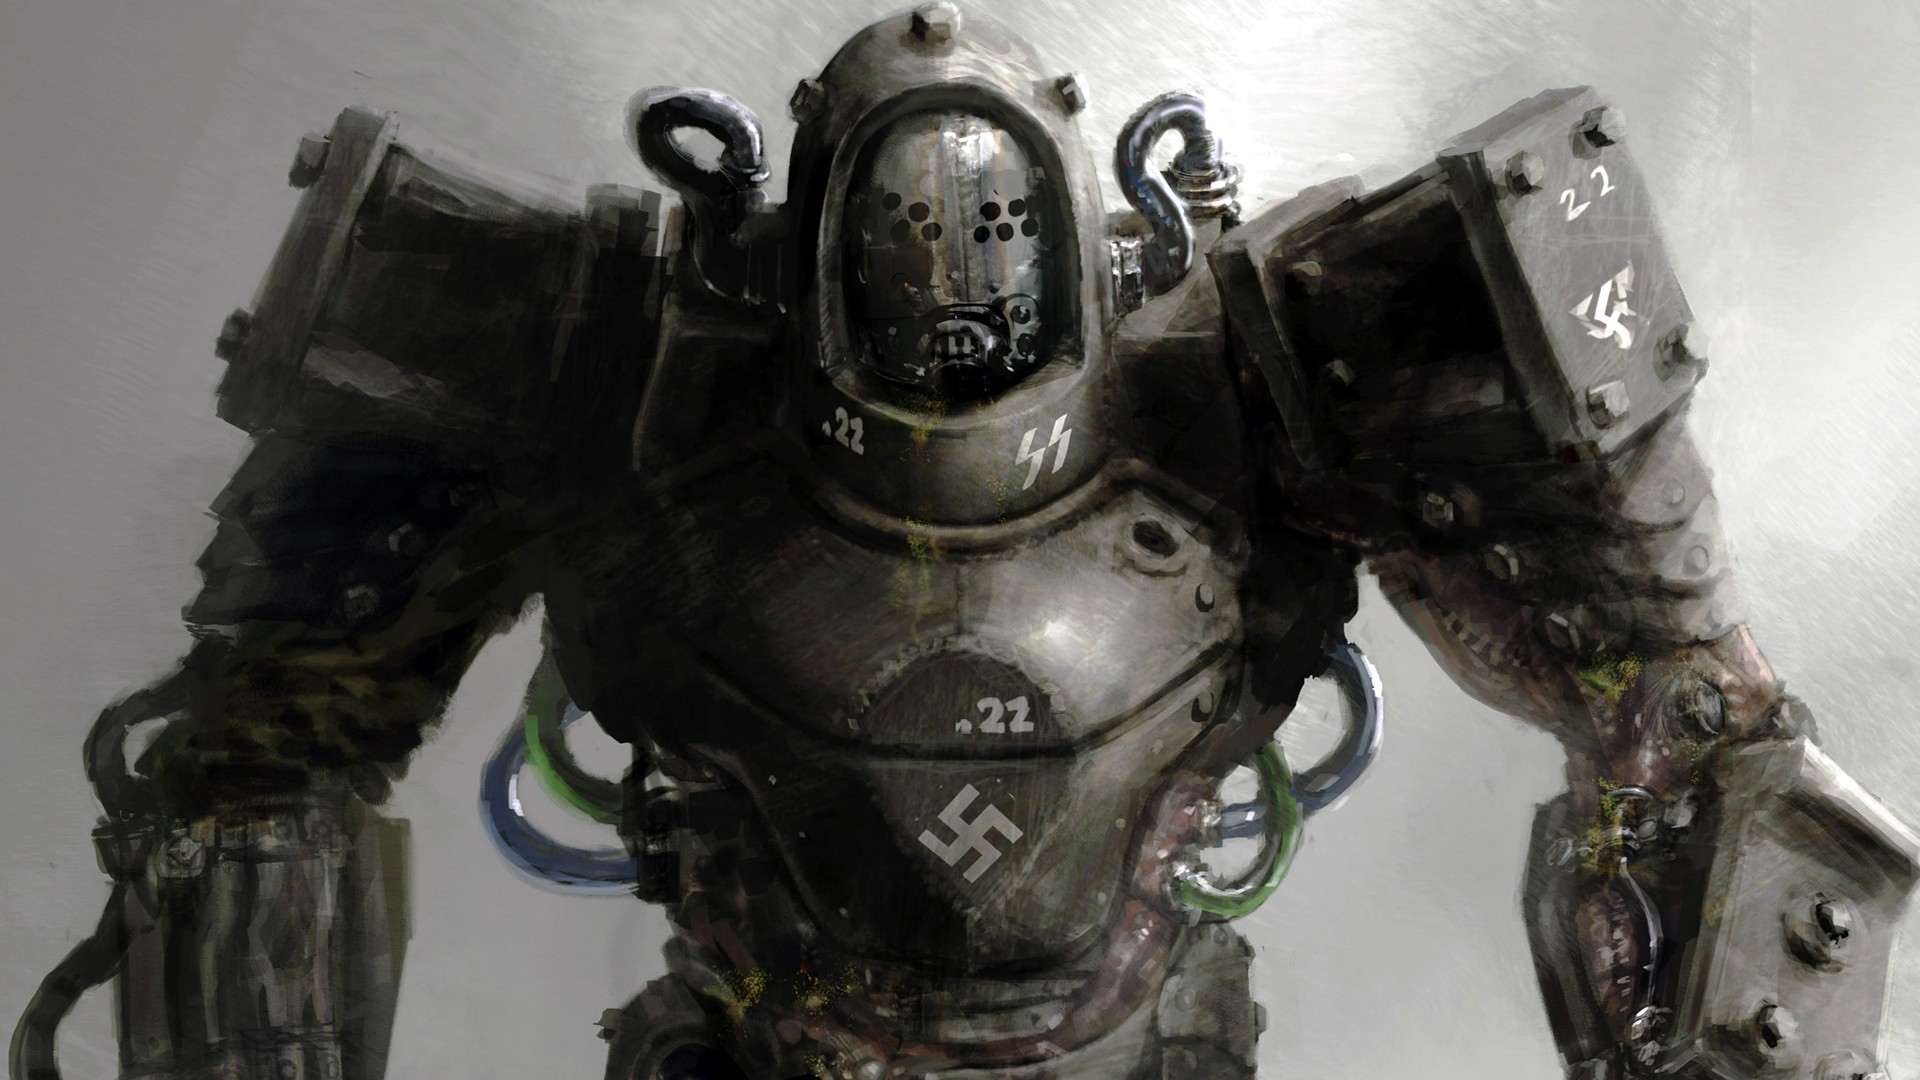 wolfenstein: the new order, wolfenstein, video game, robot, soldier